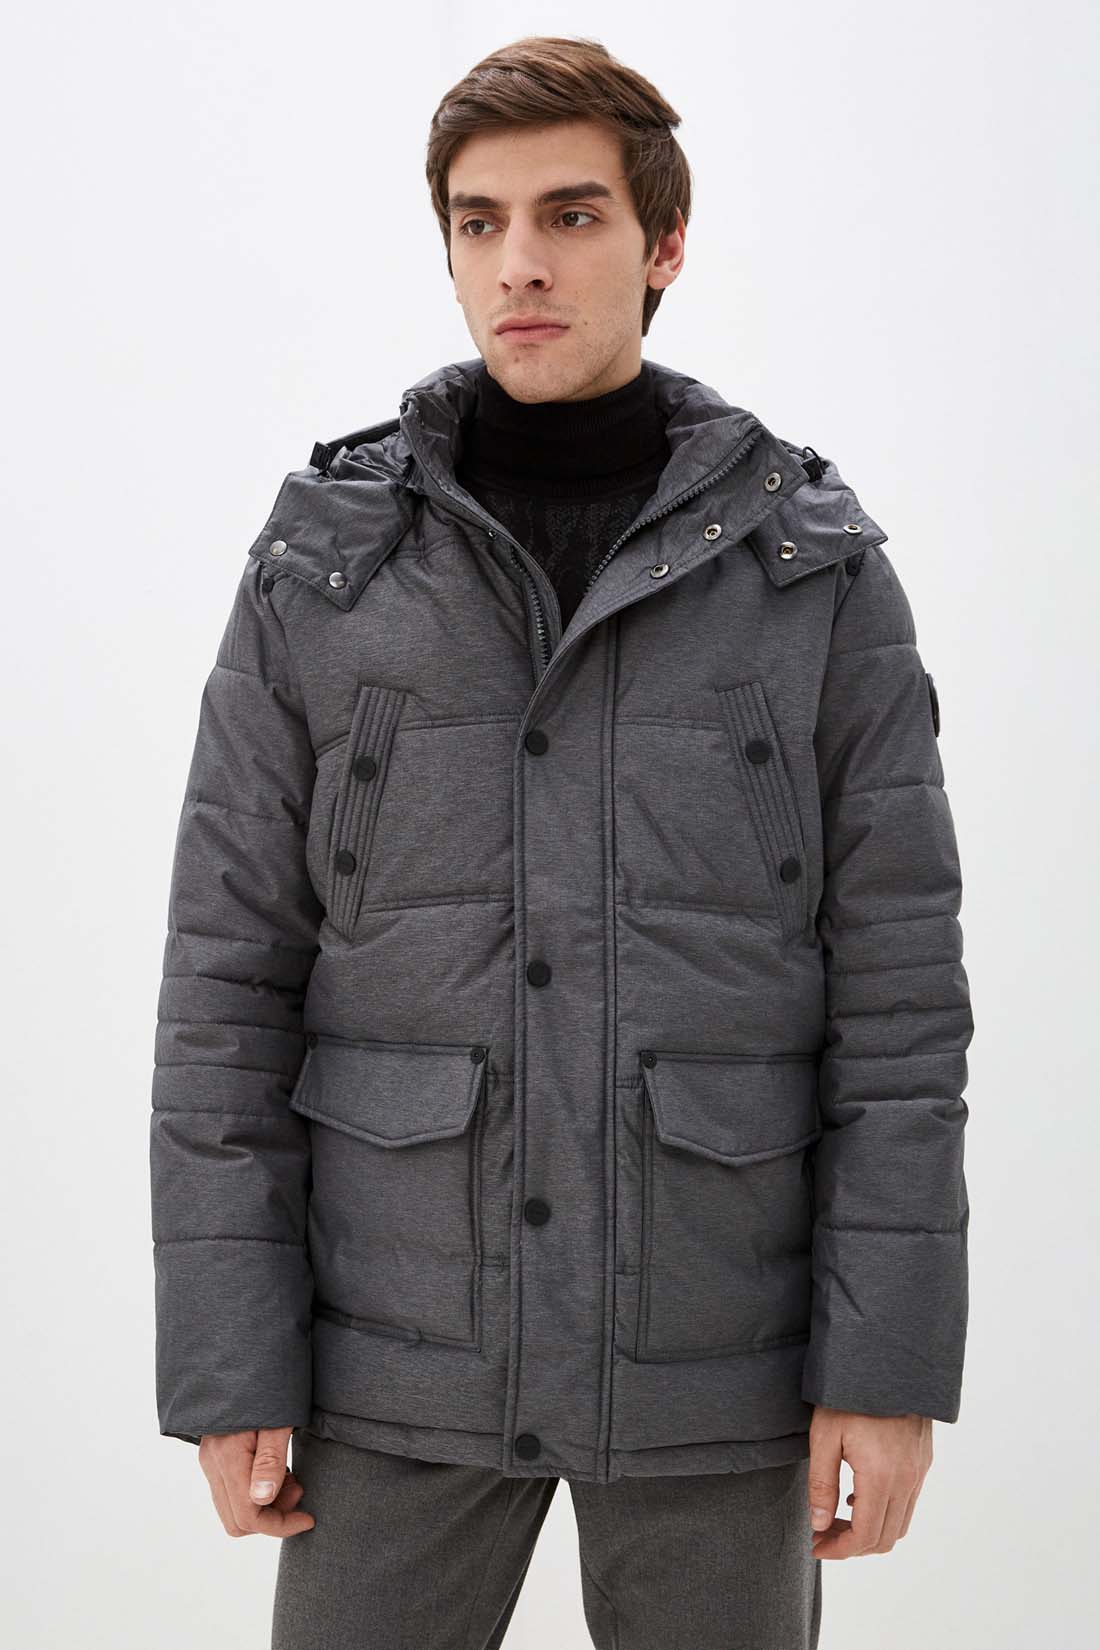 Куртка (Эко пух) (арт. baon B541507), размер S, цвет marengo melange#ebeeed Куртка (Эко пух) (арт. baon B541507) - фото 1